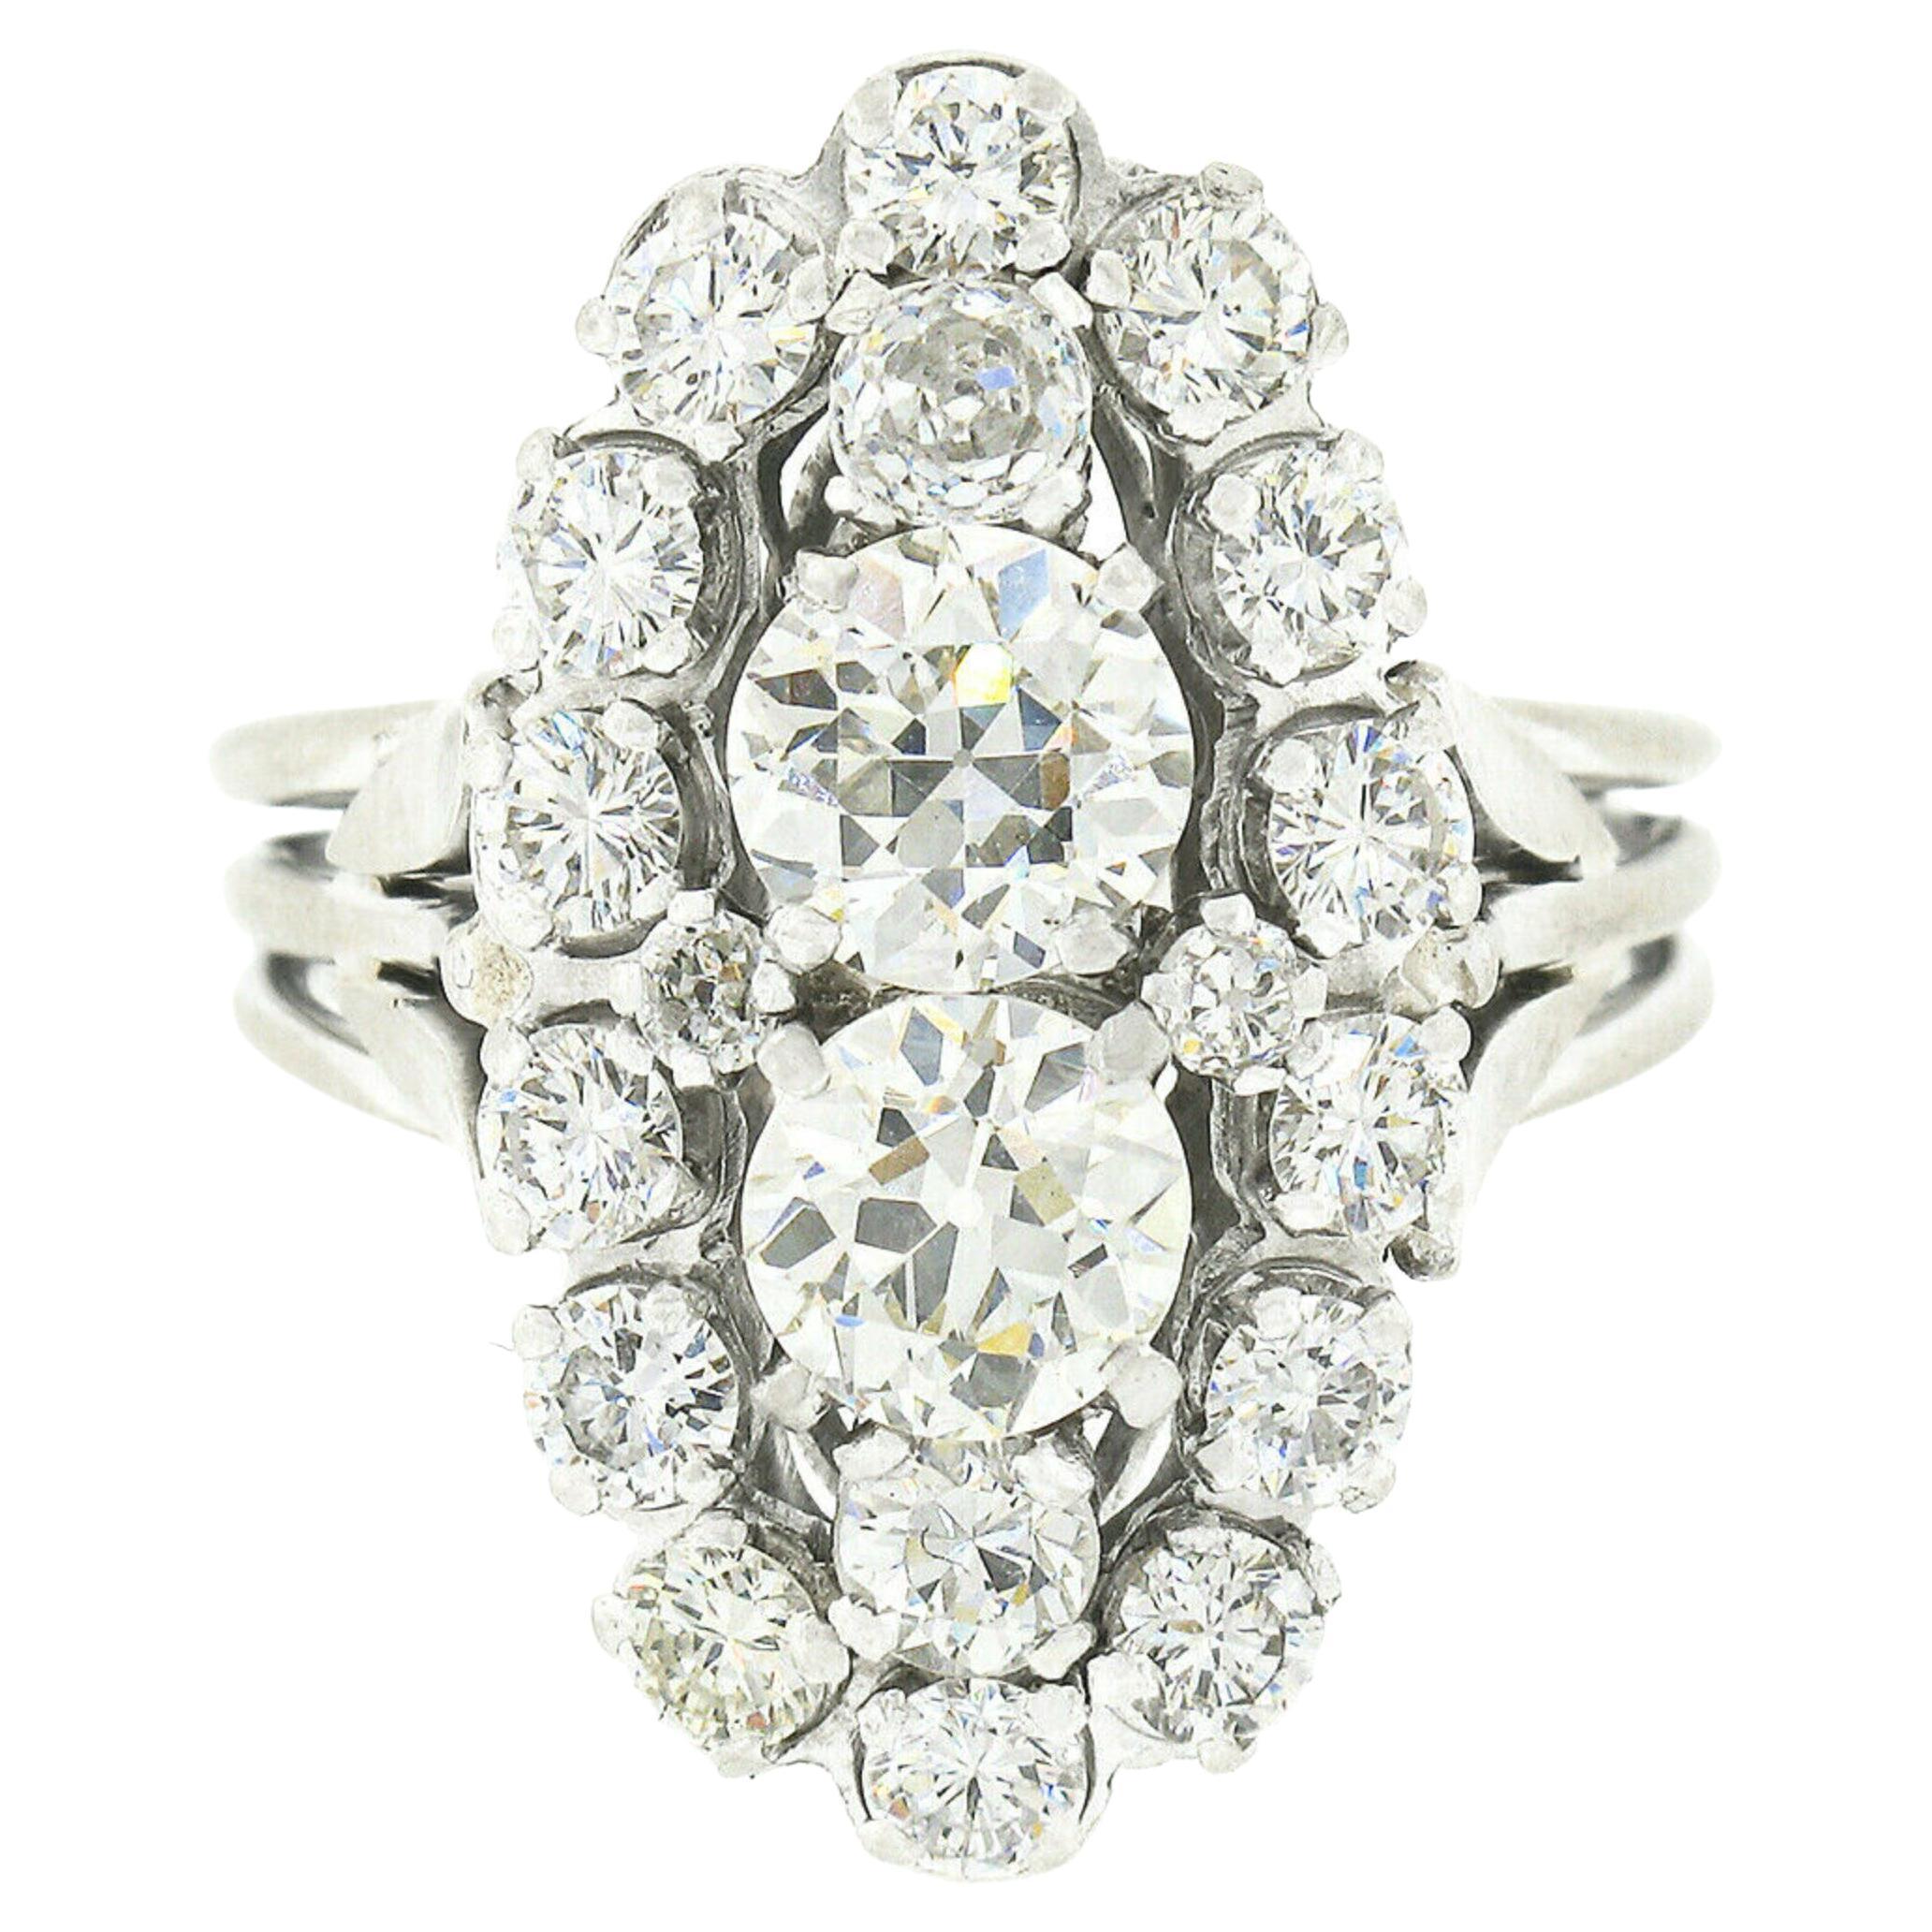 Vieille bague ovale allongée en or blanc 18 carats avec diamants taille européenne et tulipes sur les côtés